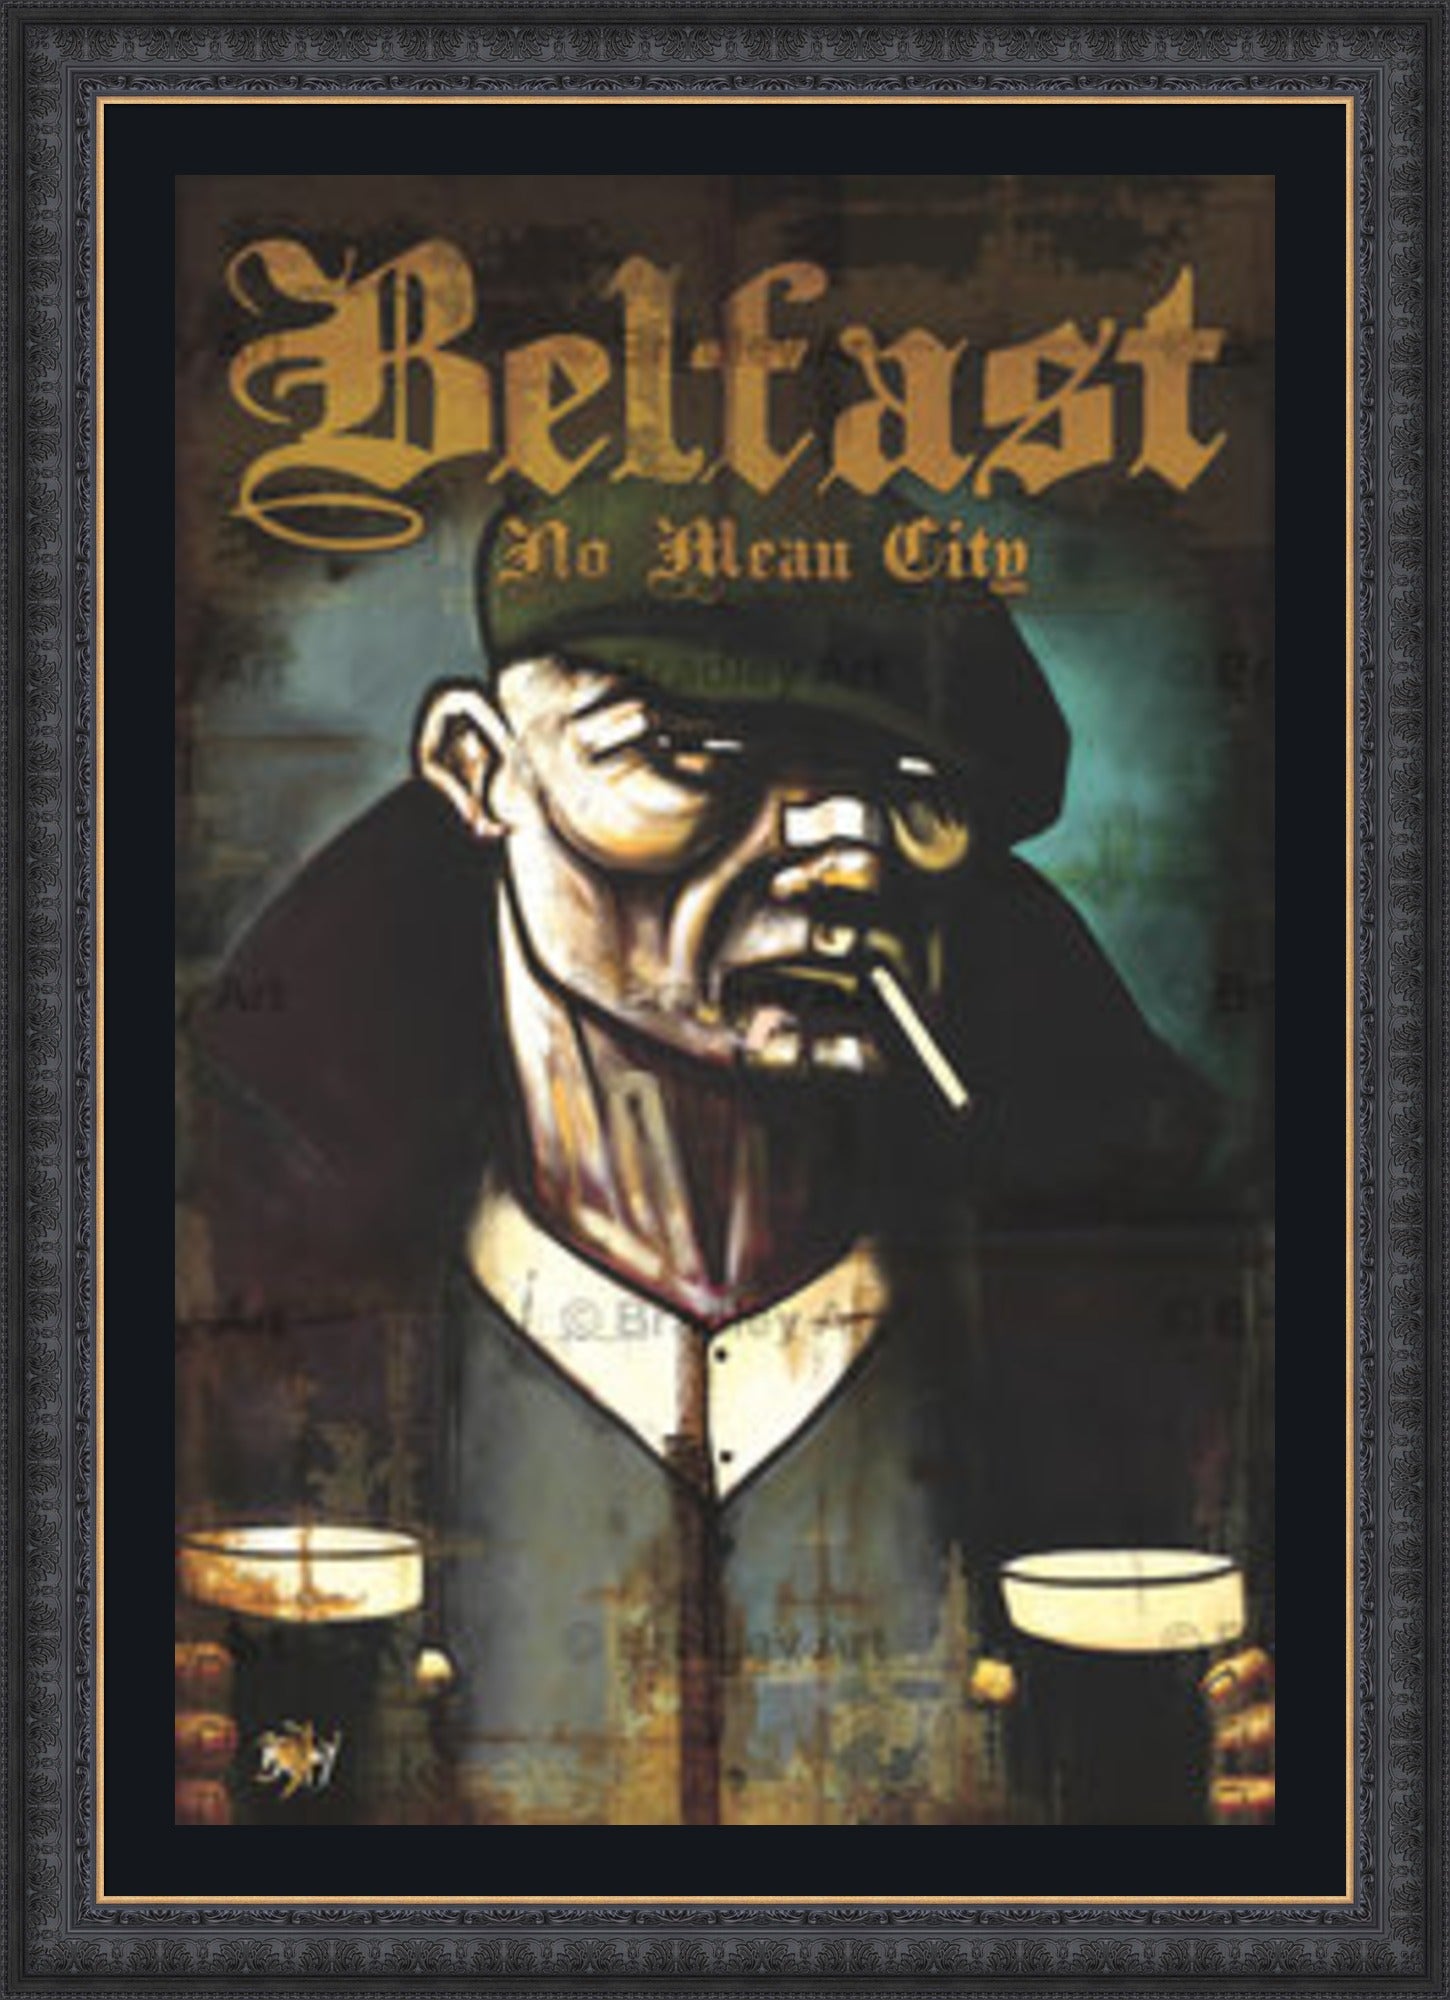 "Belfast, NMC" HE Canvas